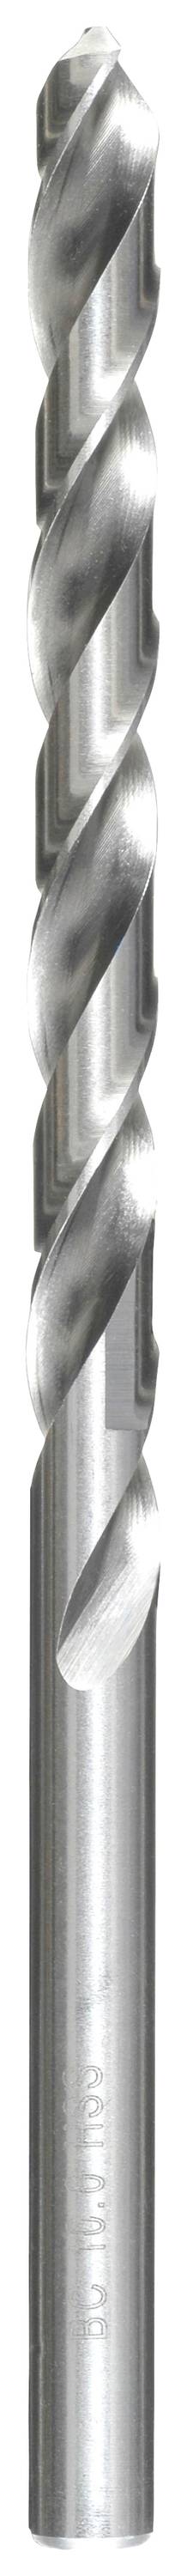 KWB 217095 HSS Spiralbohrer 1 Stück 9.5 mm Gesamtlänge 175 mm DIN 340 Zahnkranzbohrfutter 1 St.